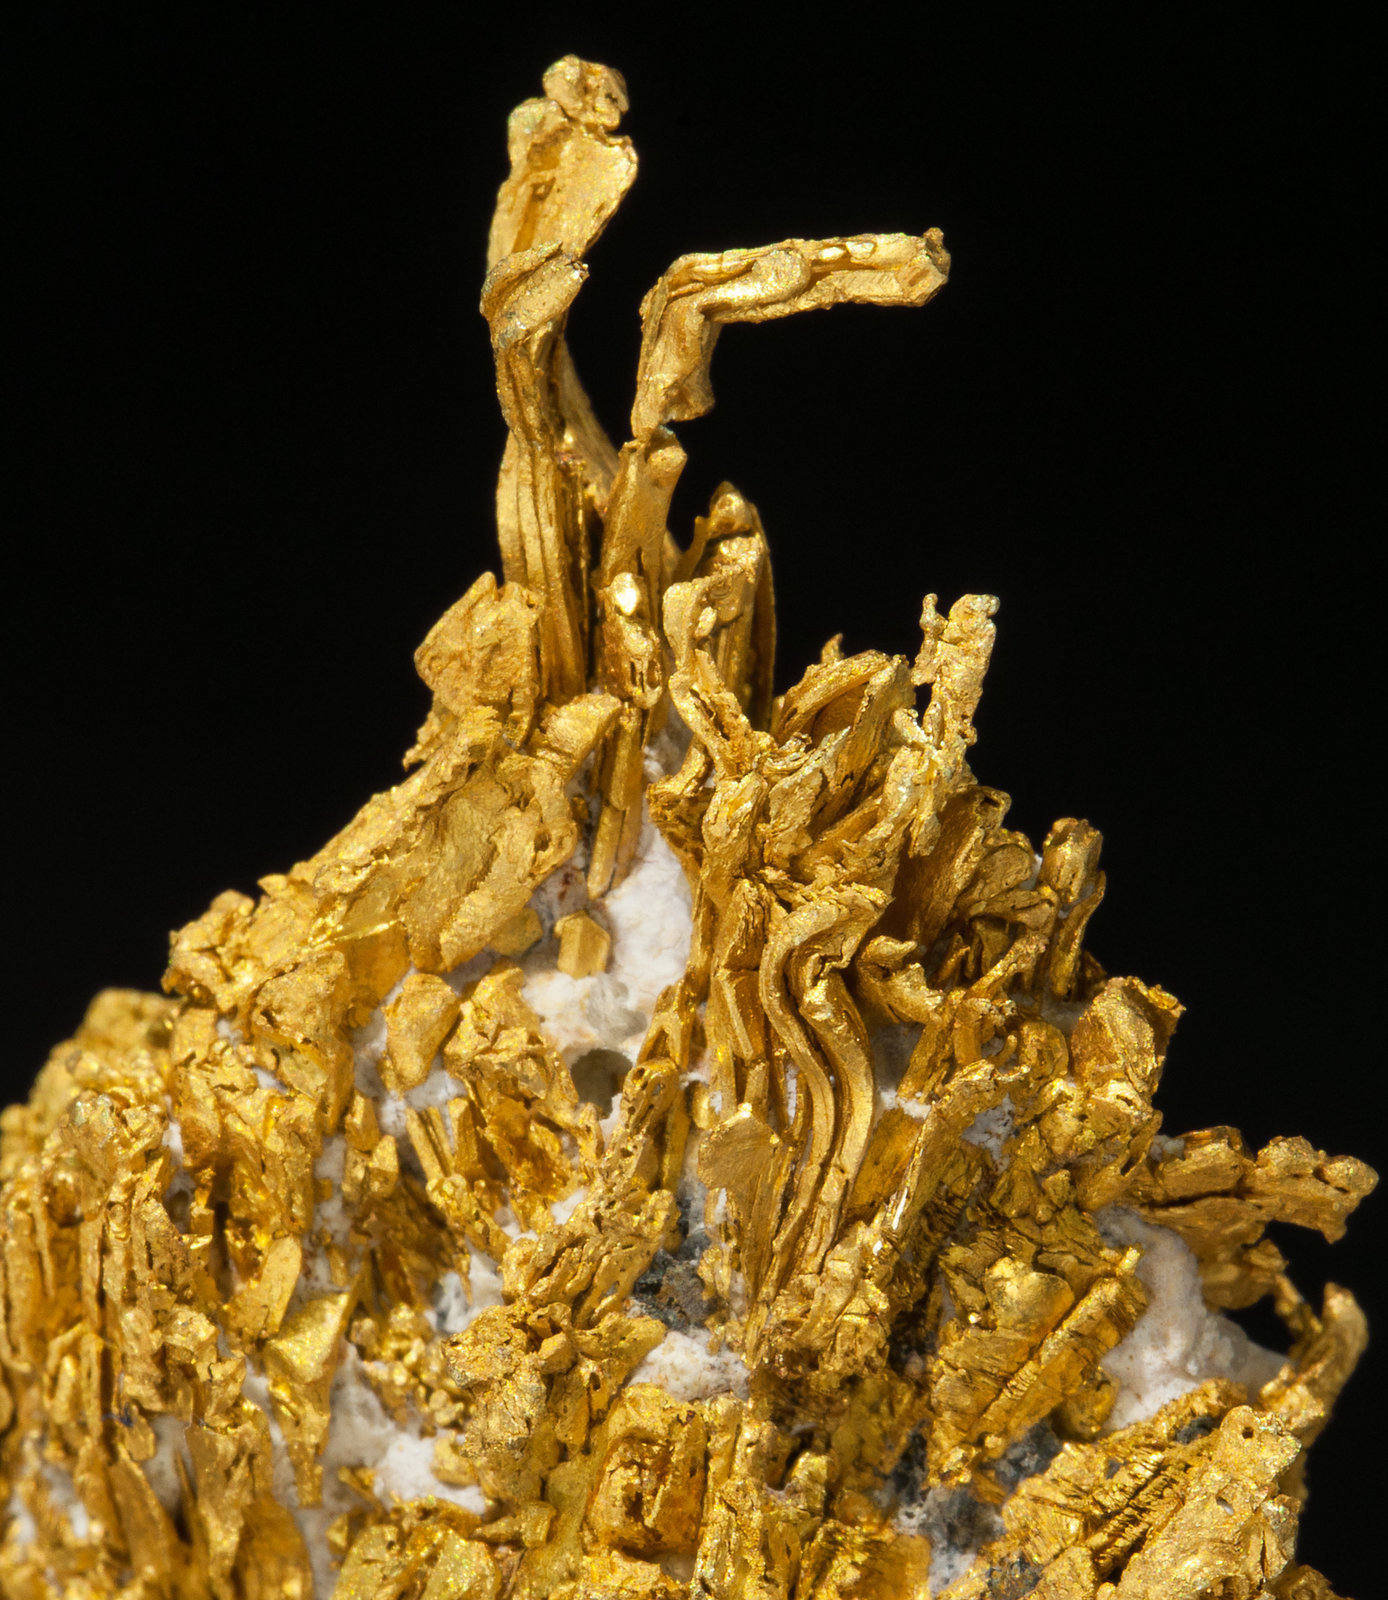 specimens/s_imagesZ3/Gold-TC56Z3d.jpg